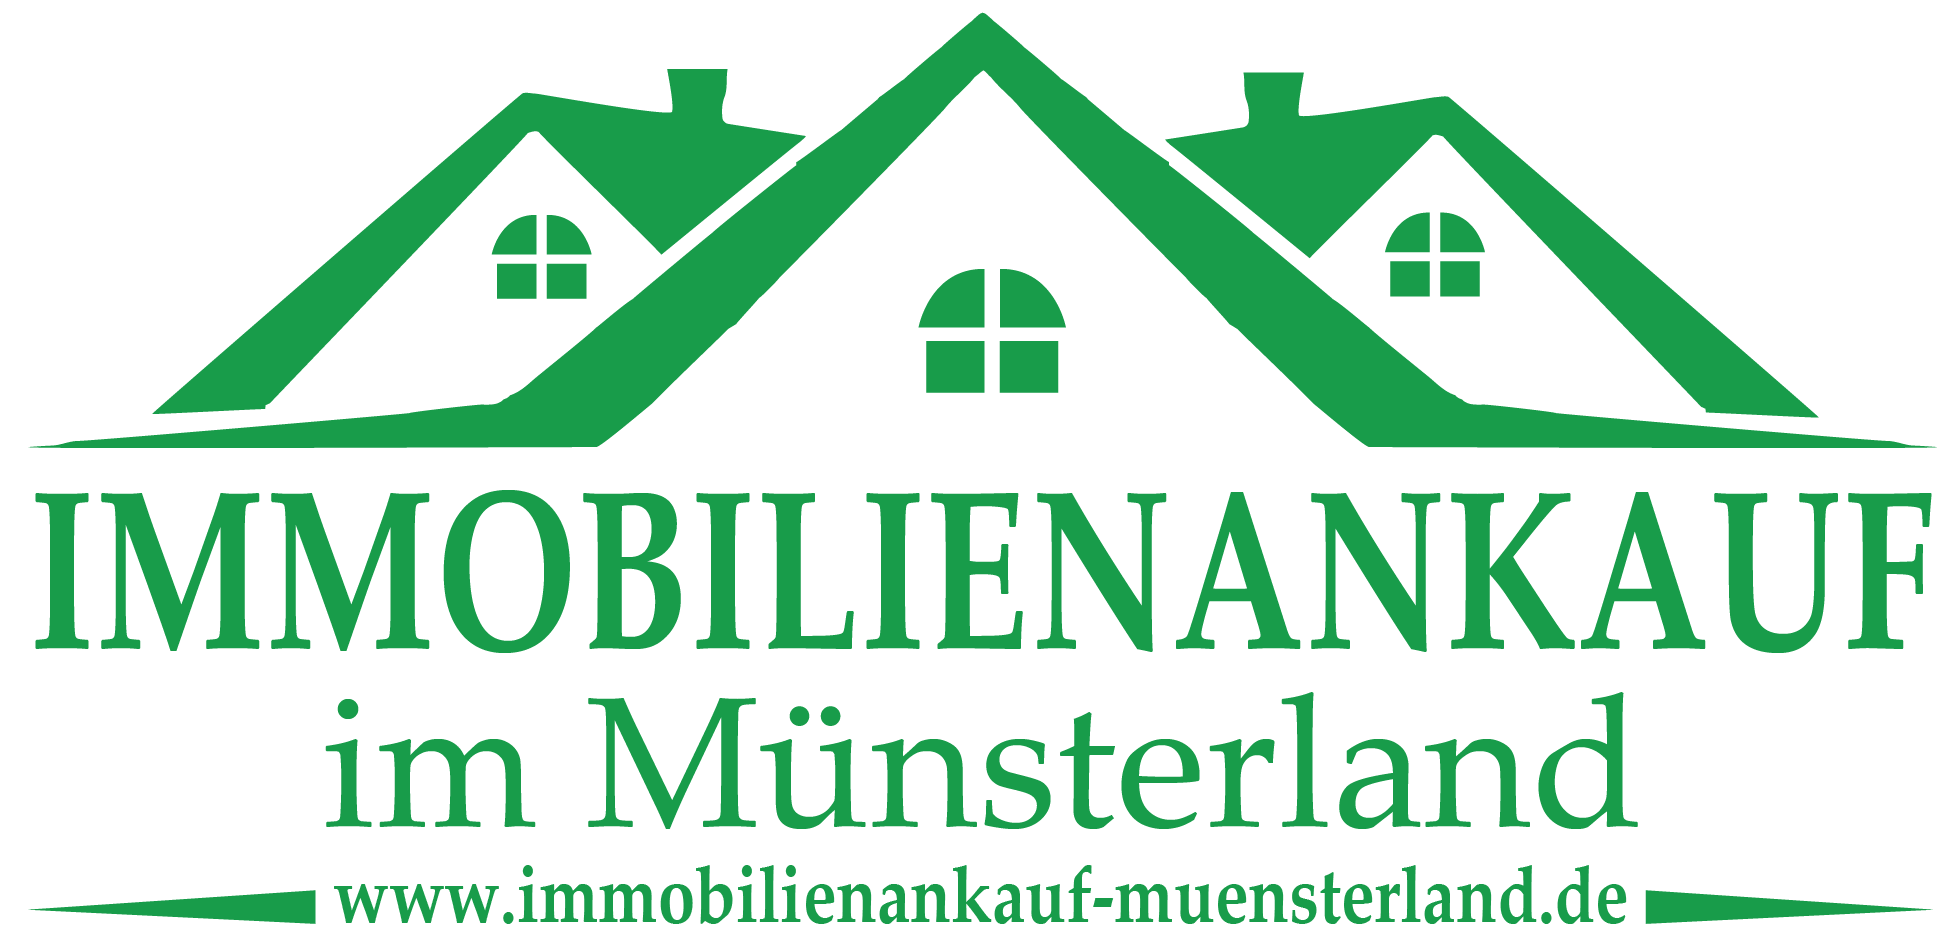 Immobilienankauf im Münsterland